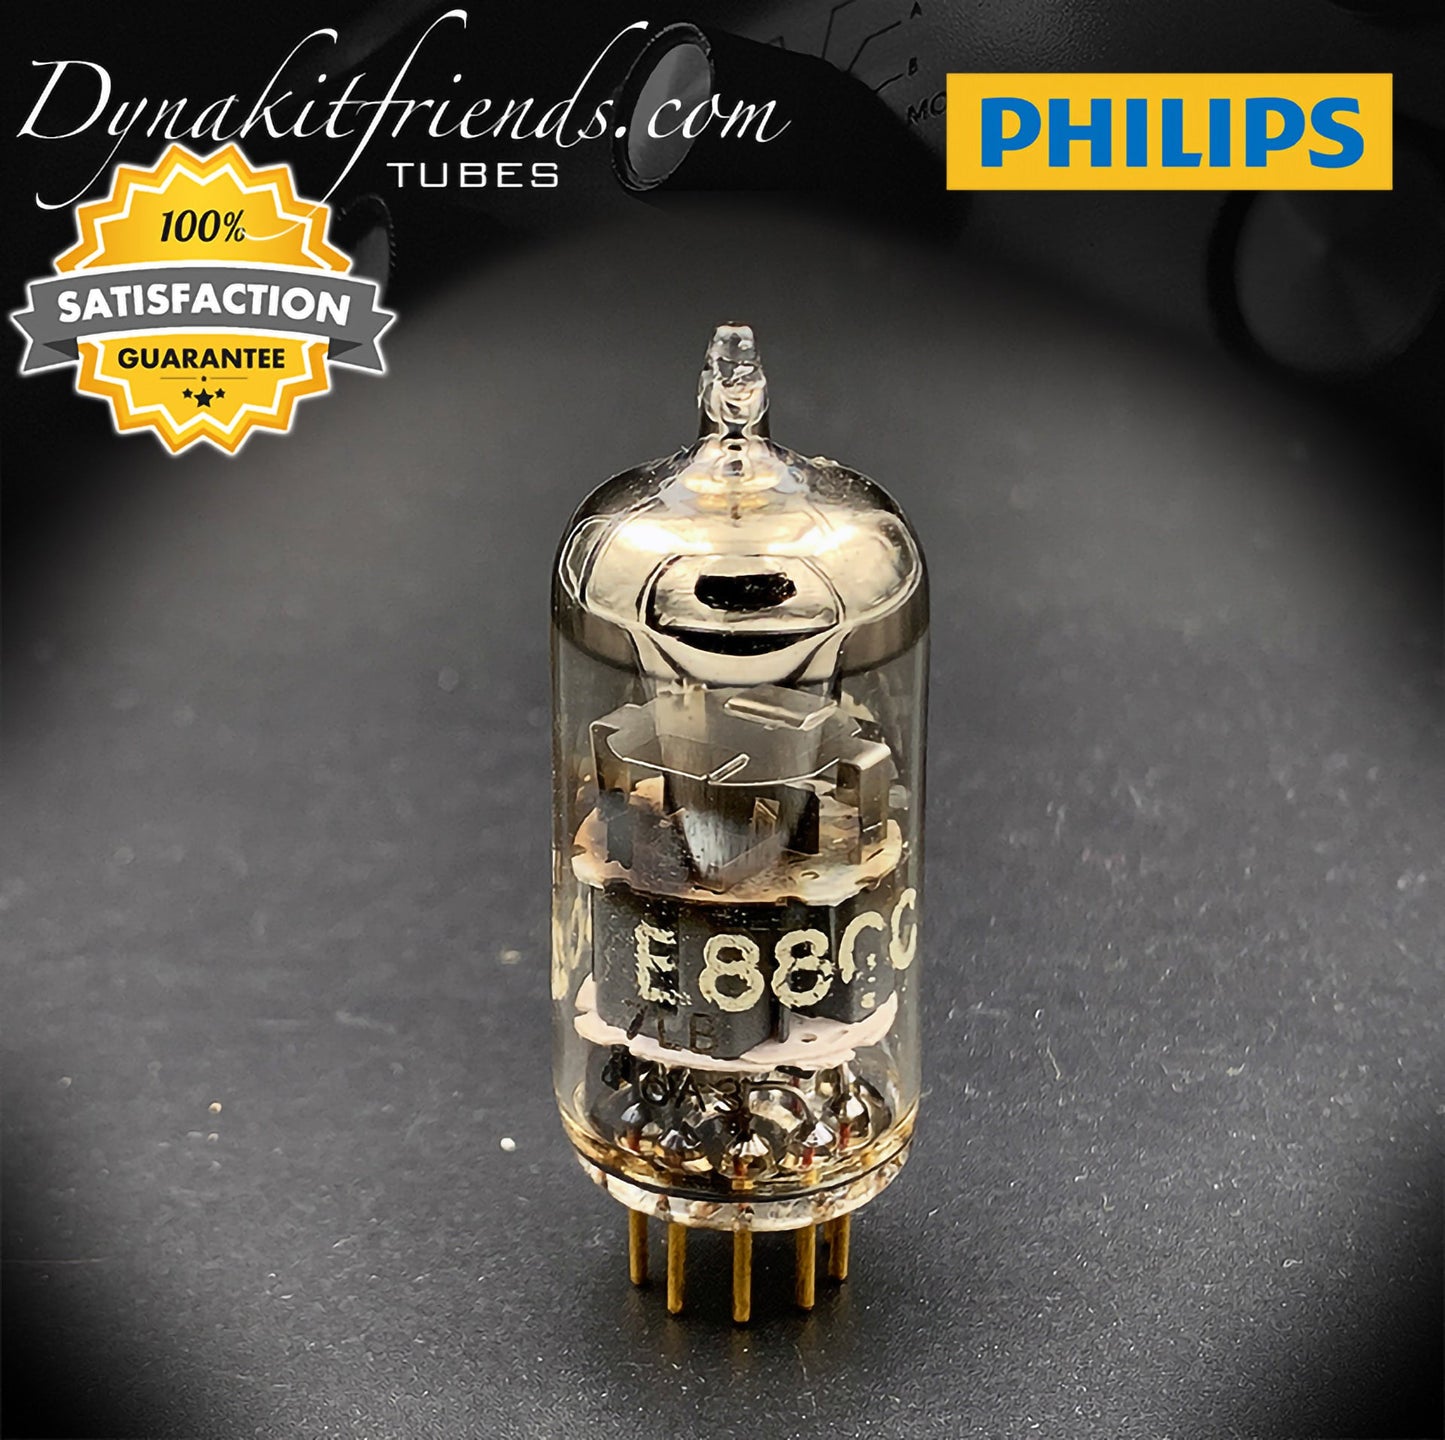 E88CC (6922) PHILIPS Tube de Getter Halo de qualité spéciale, broche en or fabriquée en Hollande